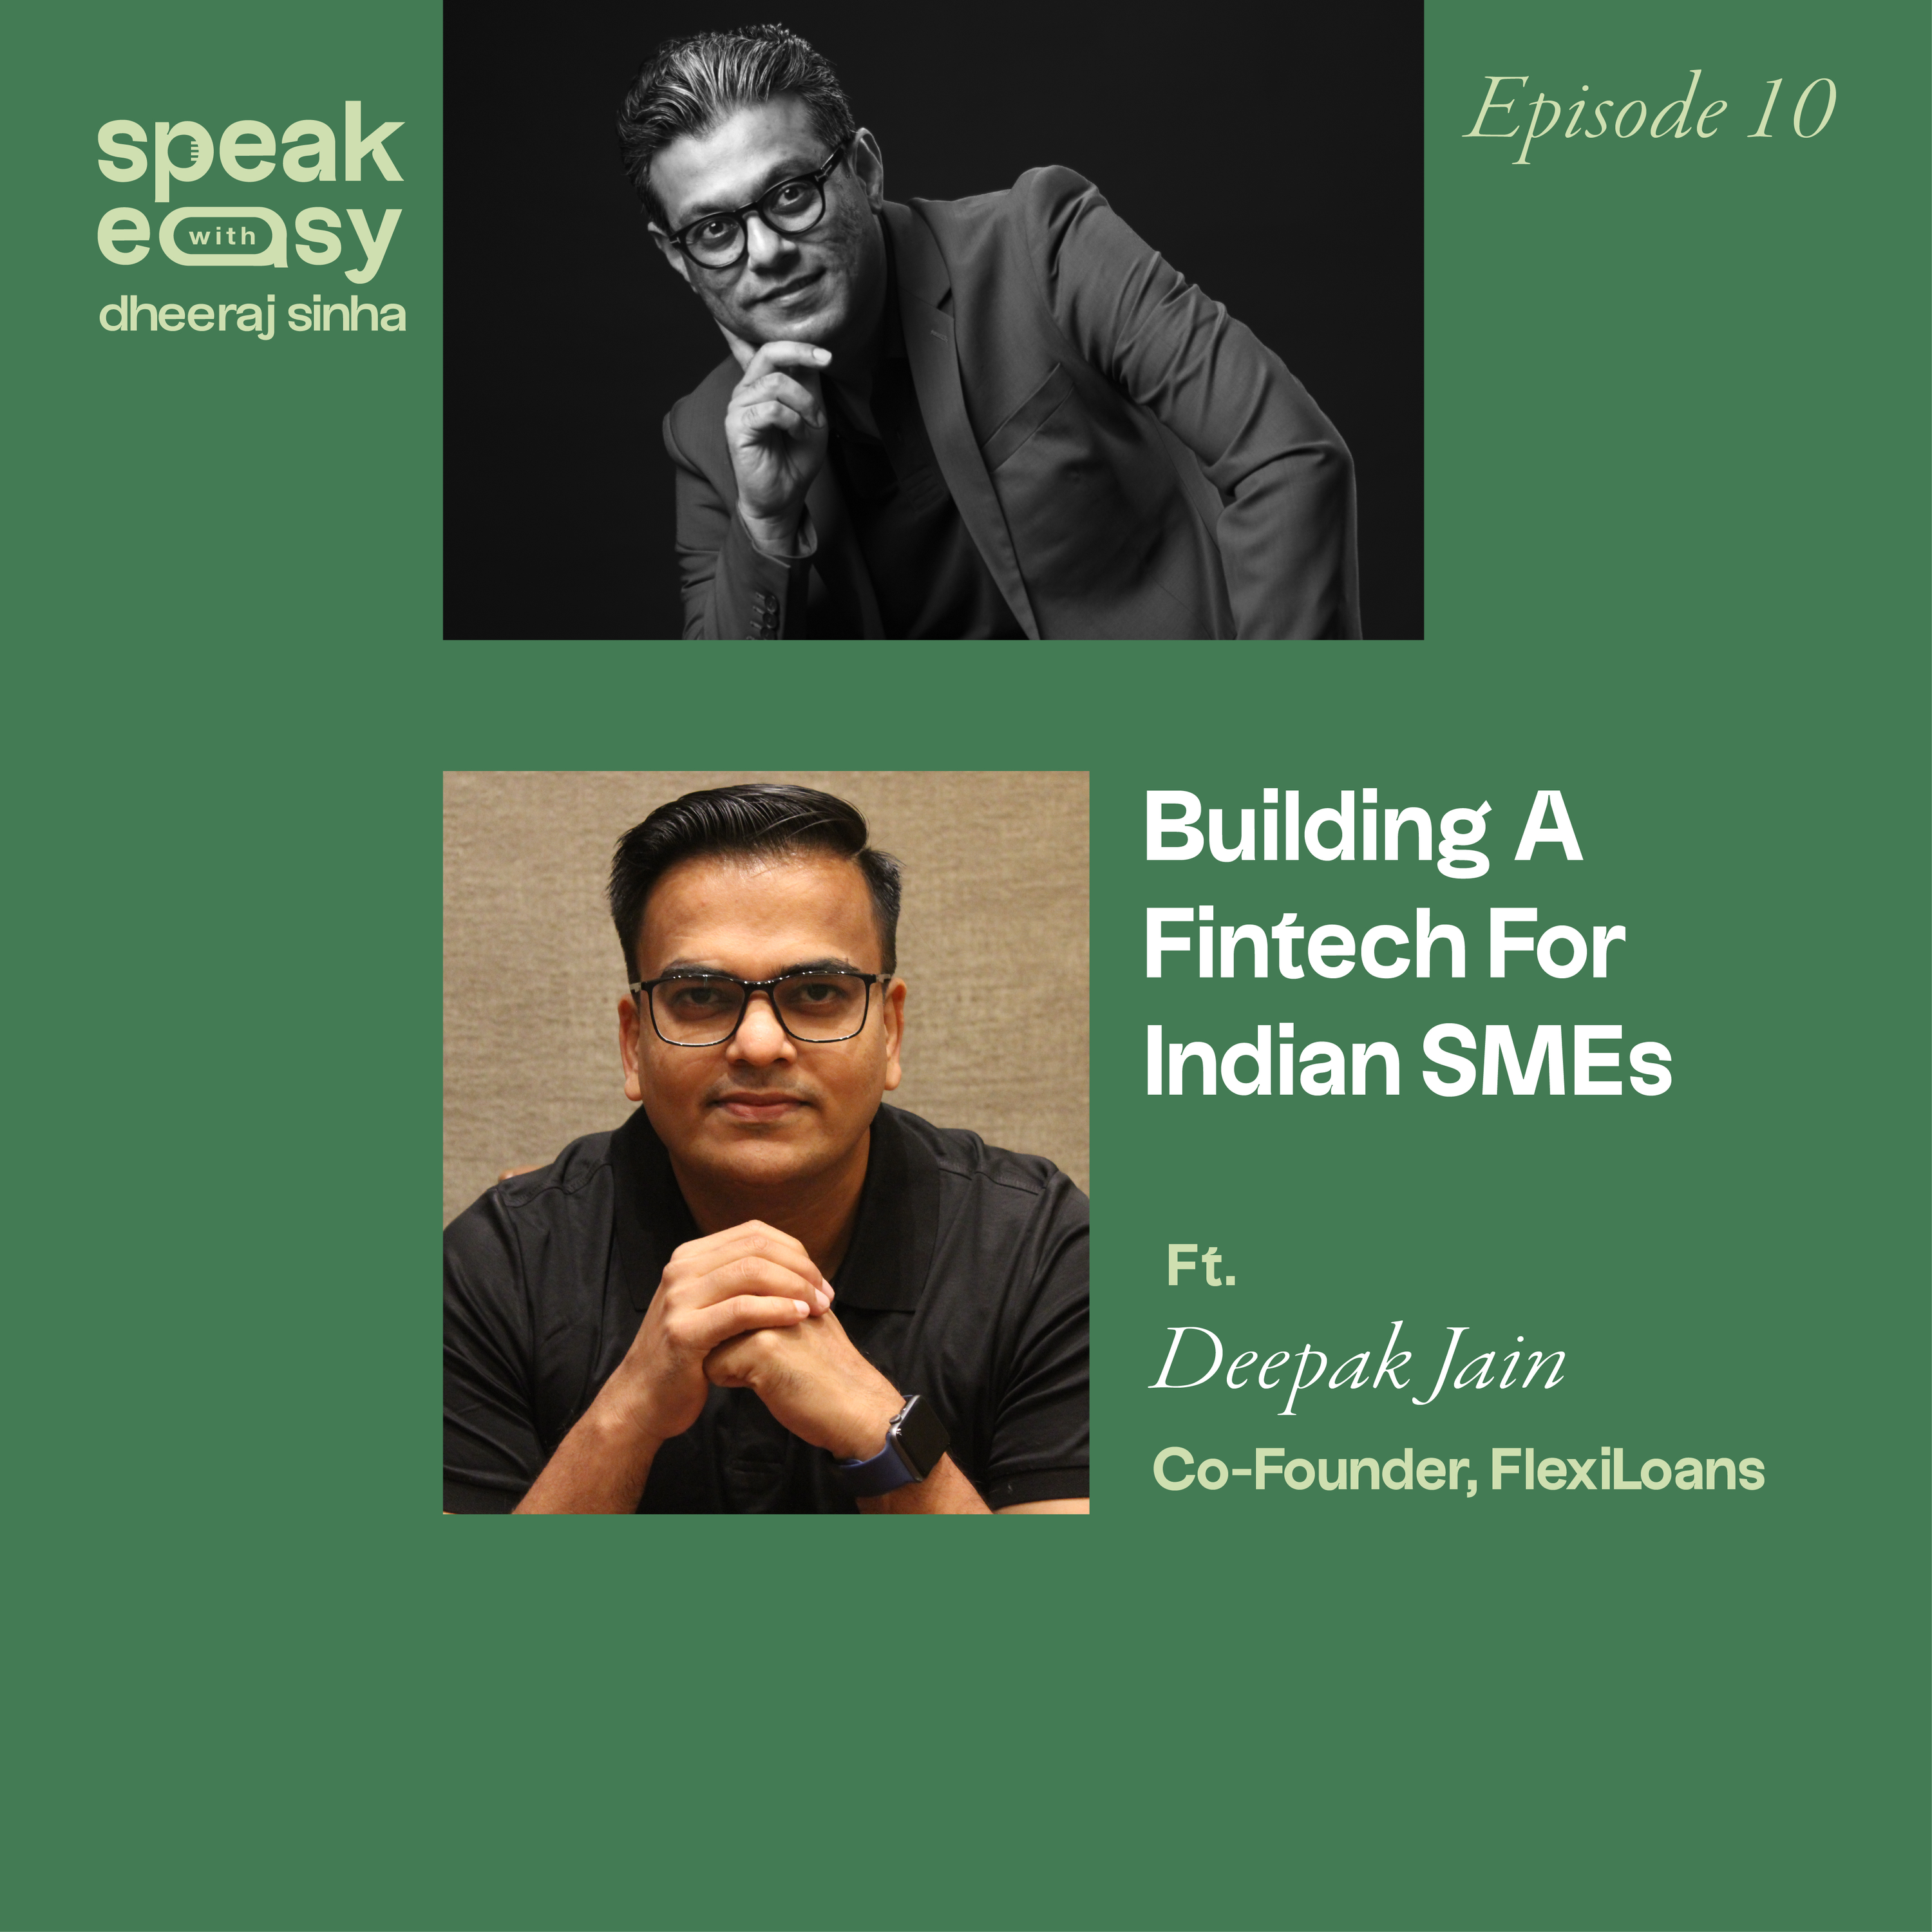 Building A Fintech For Indian SMEs ft. Deepak Jain